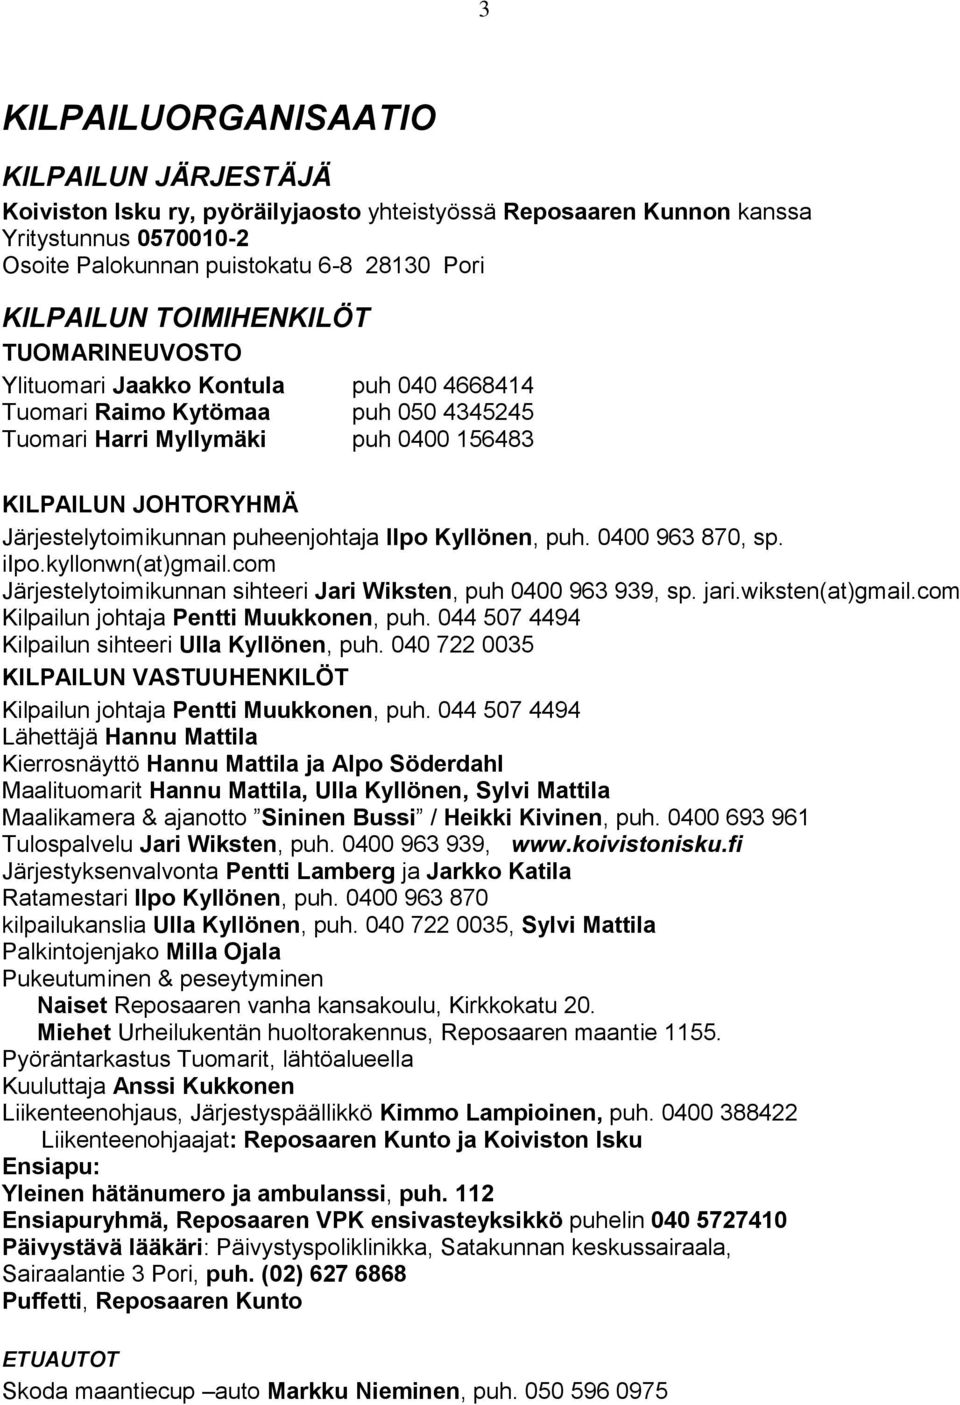 puheenjohtaja Ilpo Kyllönen, puh. 0400 963 870, sp. iipo.kyllonwn(at)gmail.com Järjestelytoimikunnan sihteeri Jari Wiksten, puh 0400 963 939, sp. jari.wiksten(at)gmail.